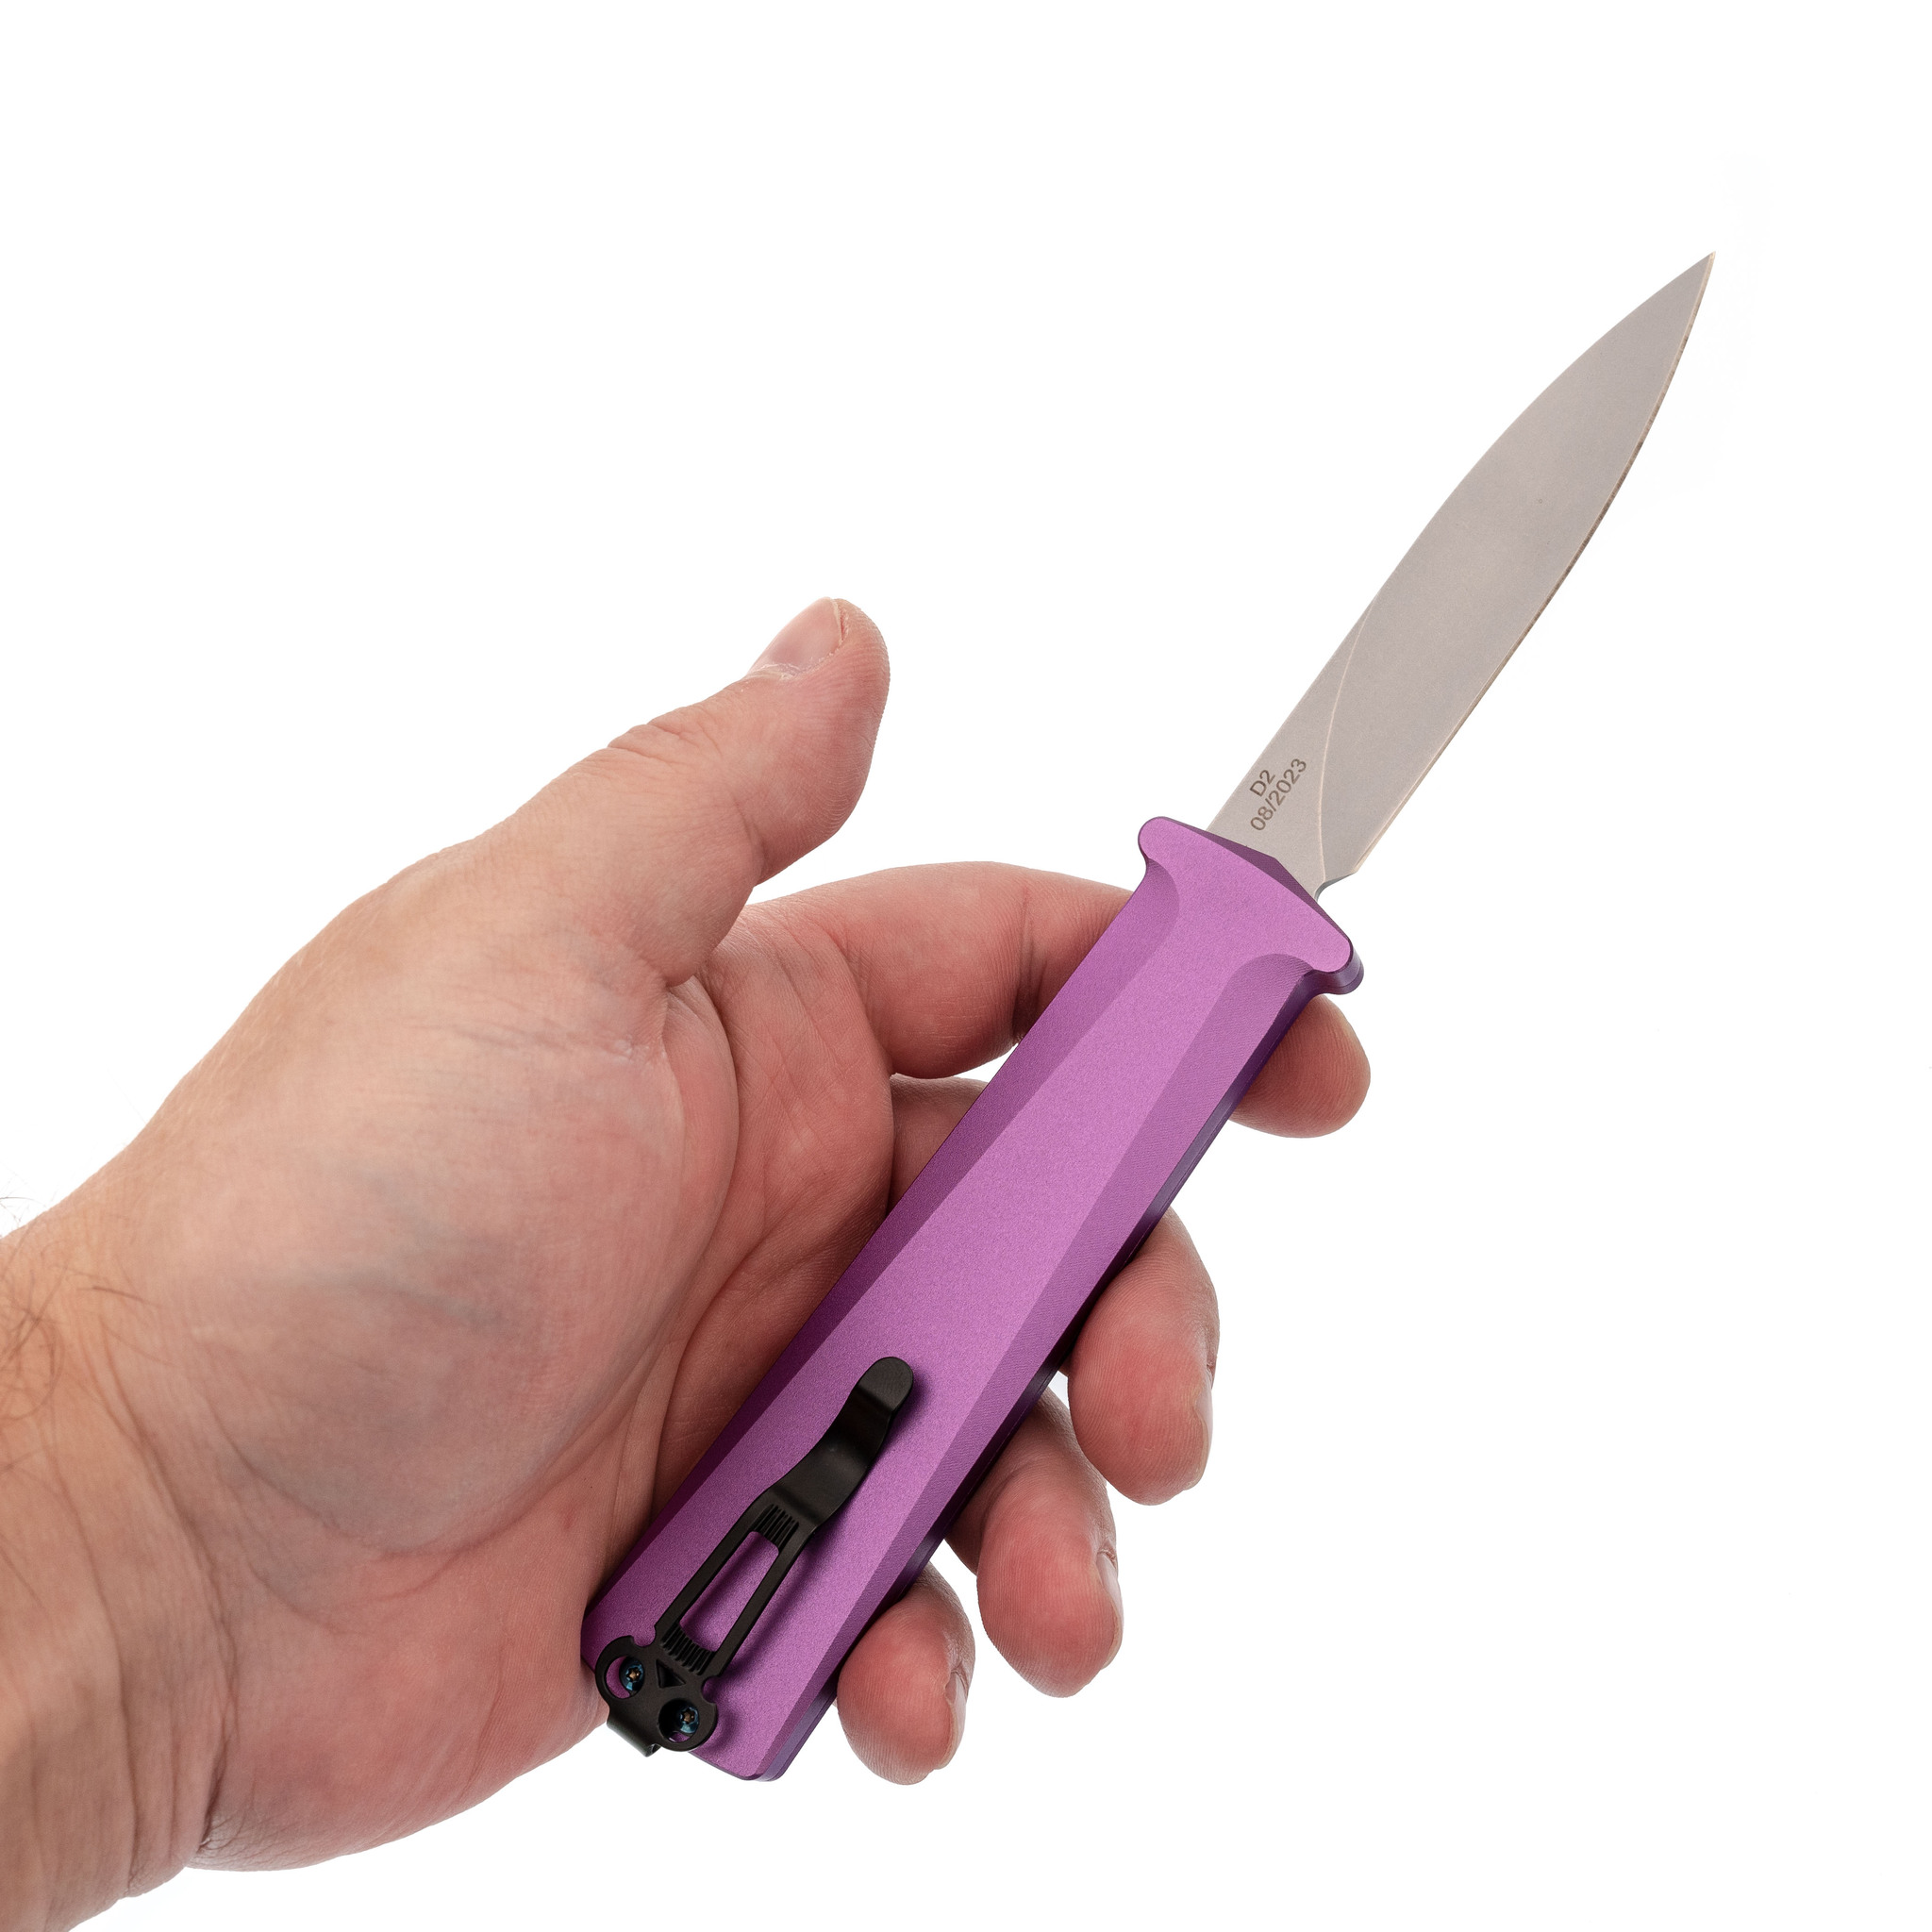 Автоматический нож Daggerr Кощей Slim Purple, сталь D2, рукоять алюминий - фото 8